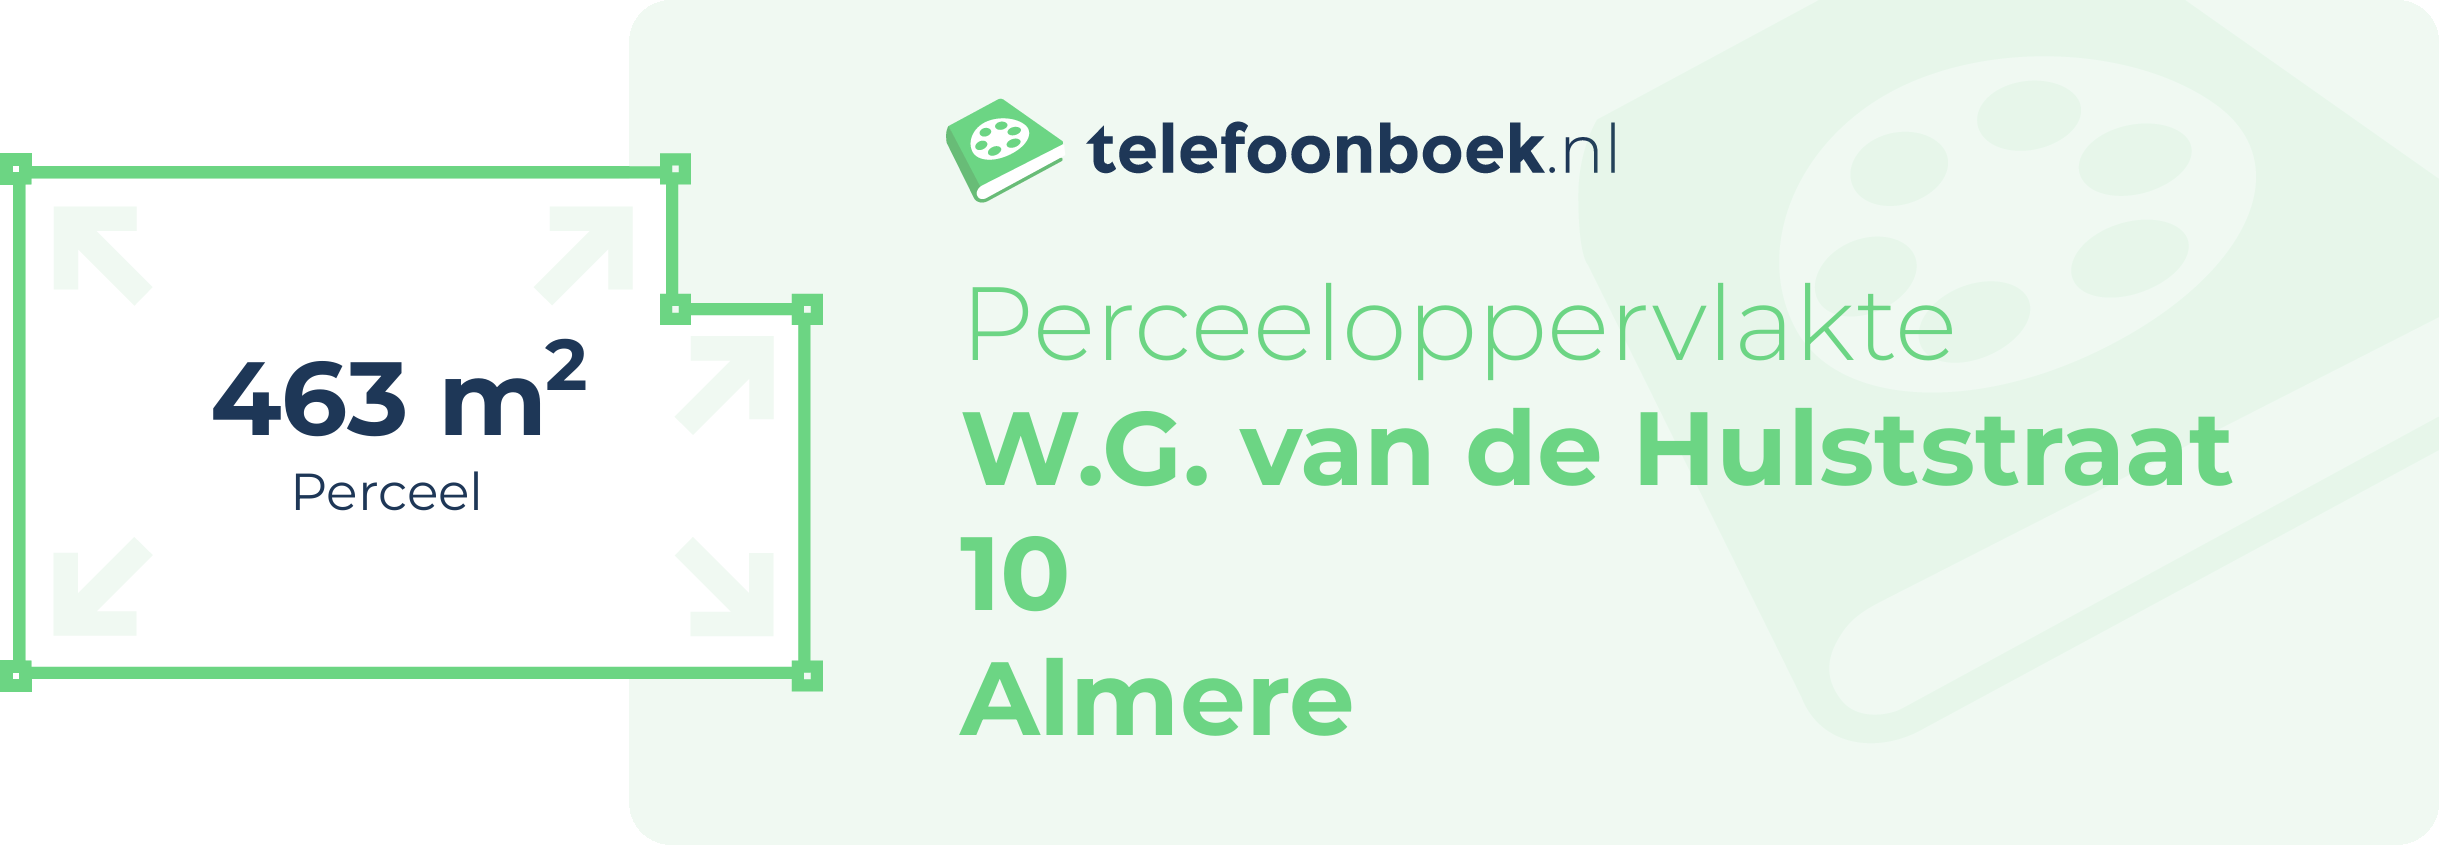 Perceeloppervlakte W.G. Van De Hulststraat 10 Almere